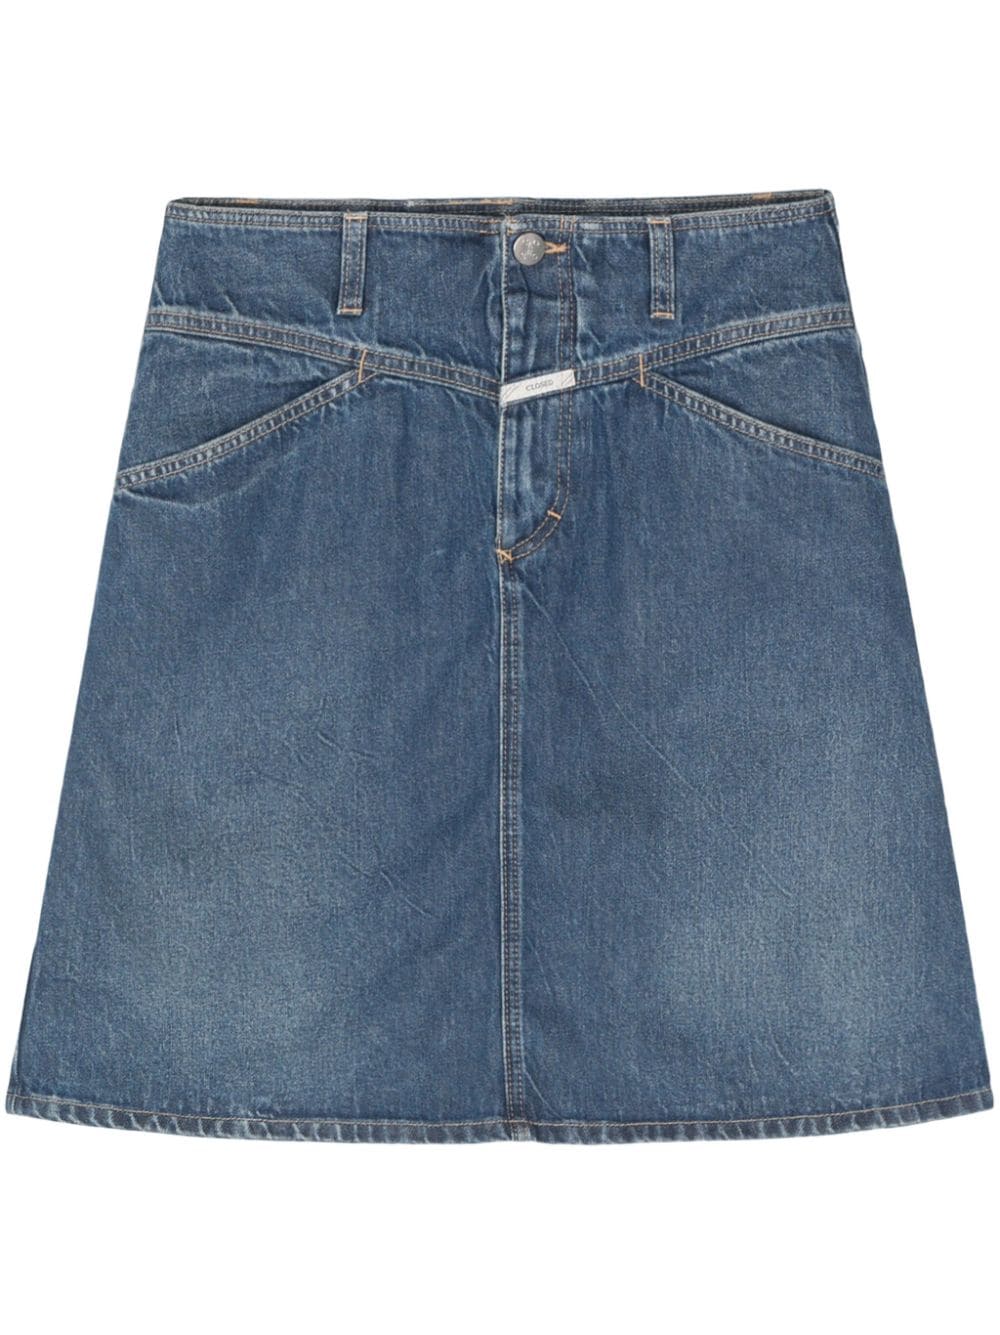 CLOSED CLOSED- Denim Mini Skirt